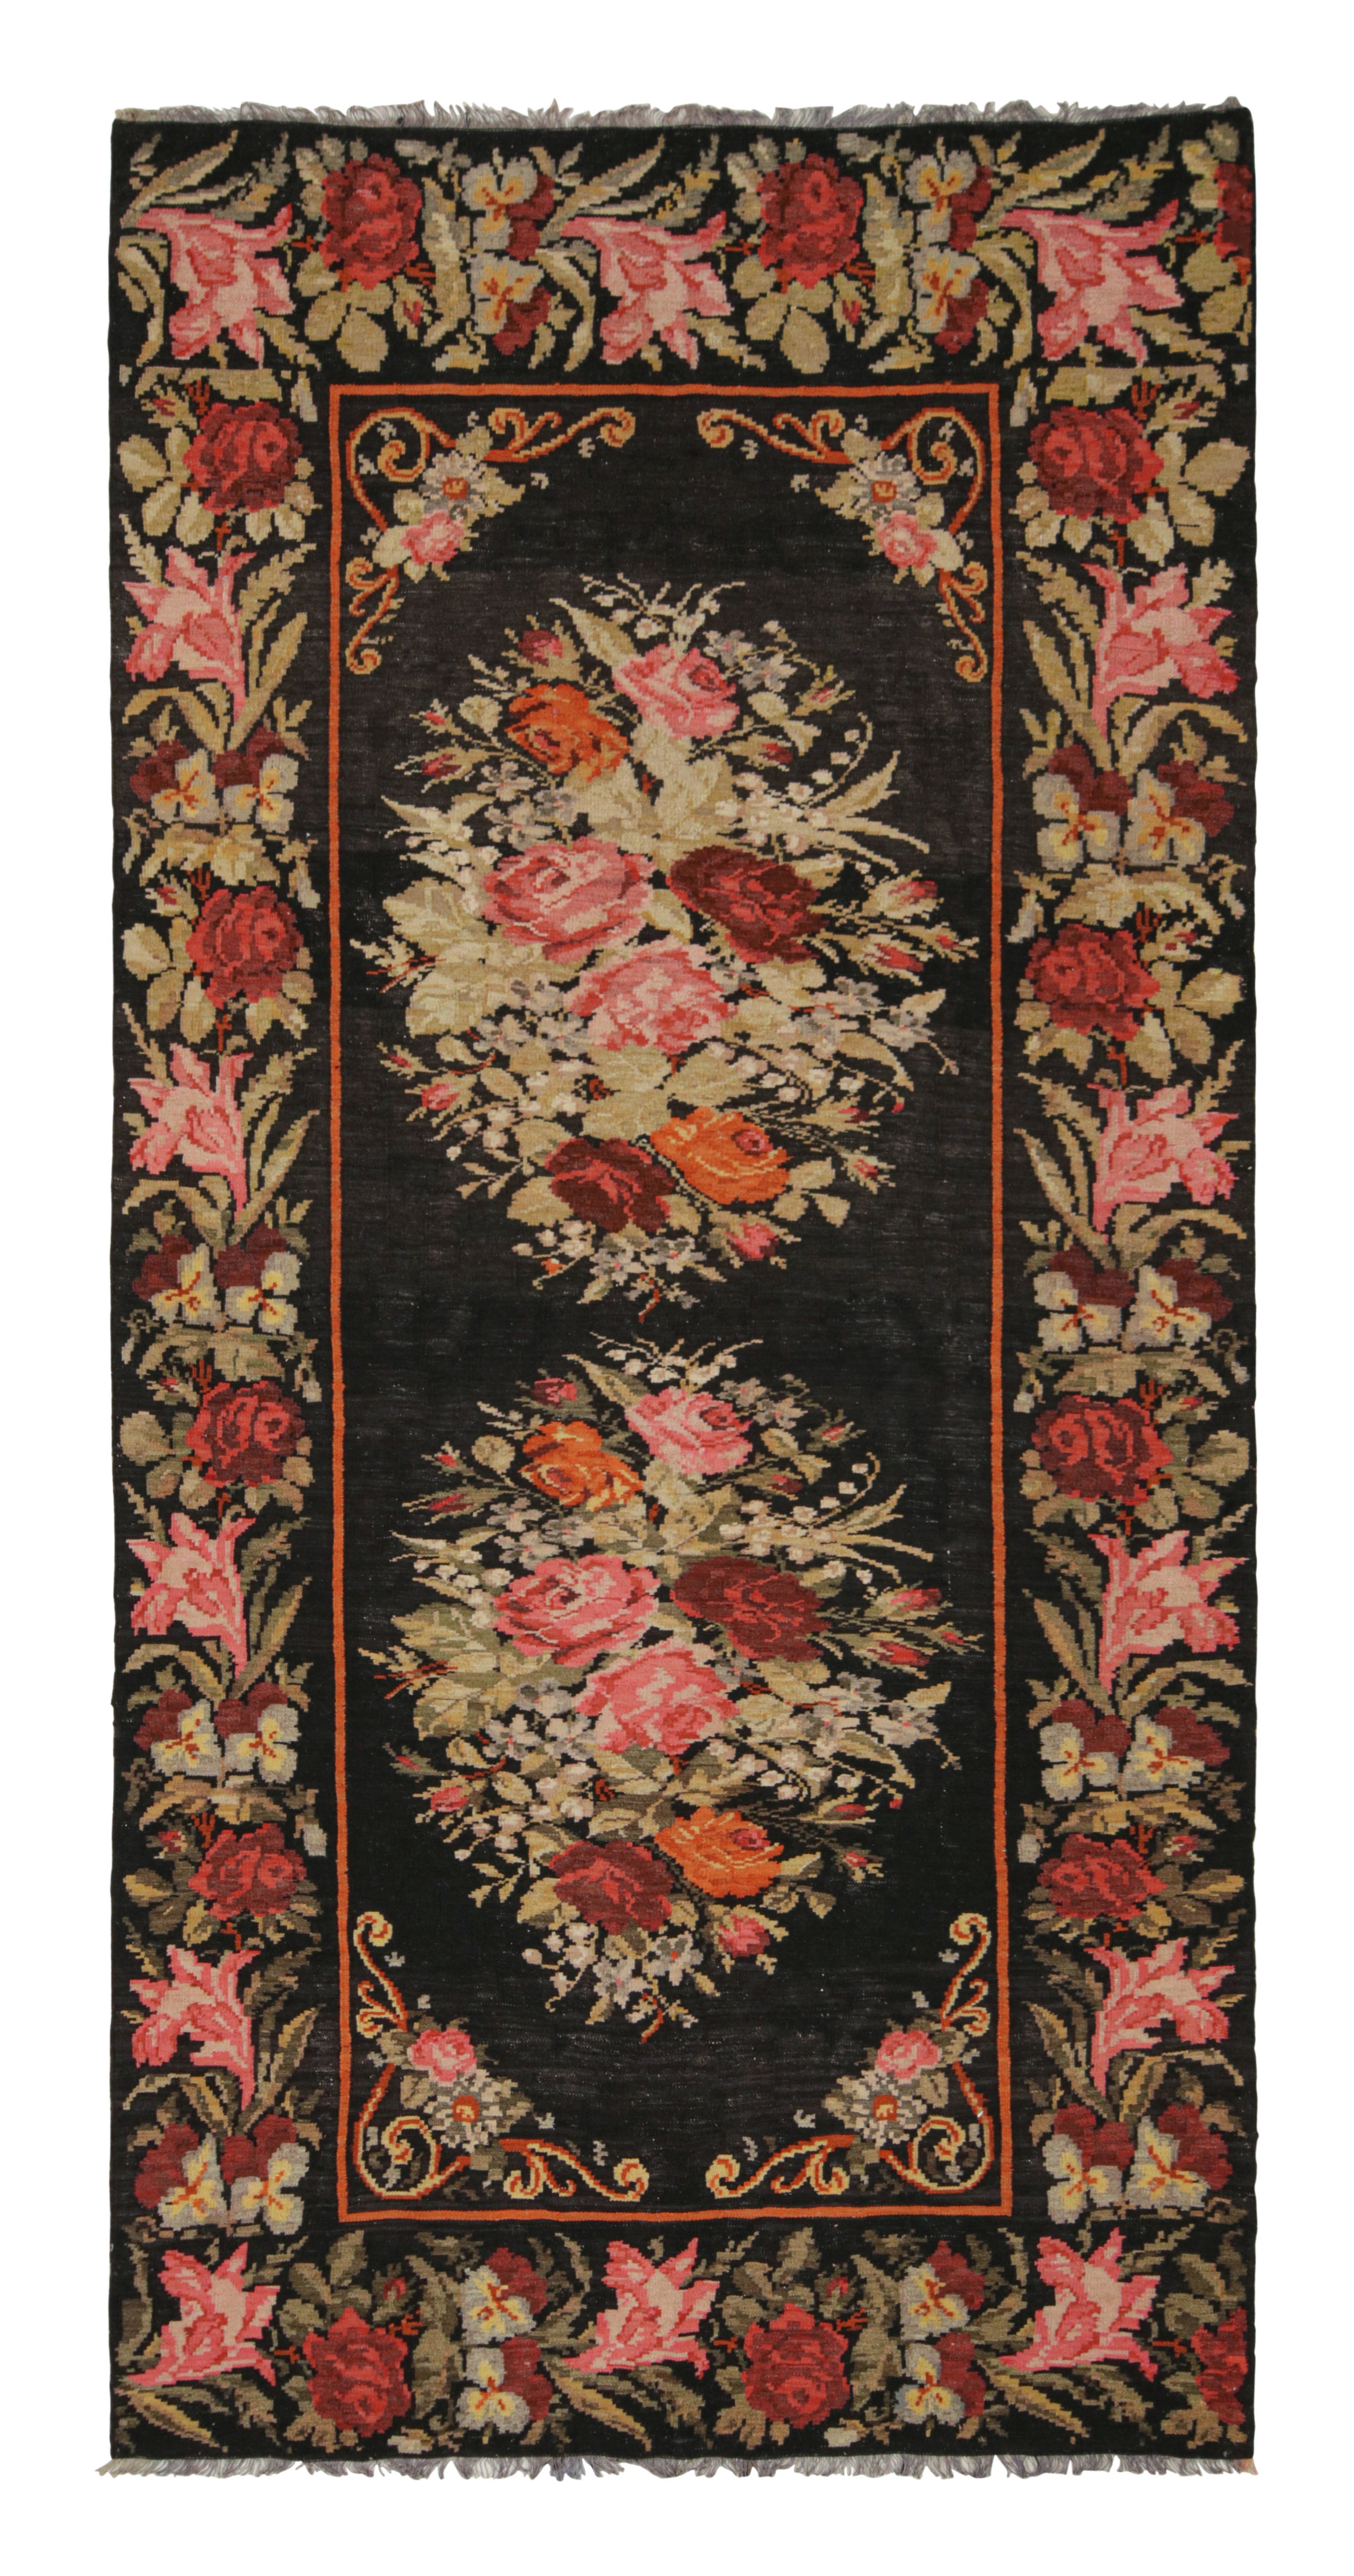 Türkischer roter Vintage-Kelim-Teppich aus Wolle von Rug & Kilim in bessarabischem Design